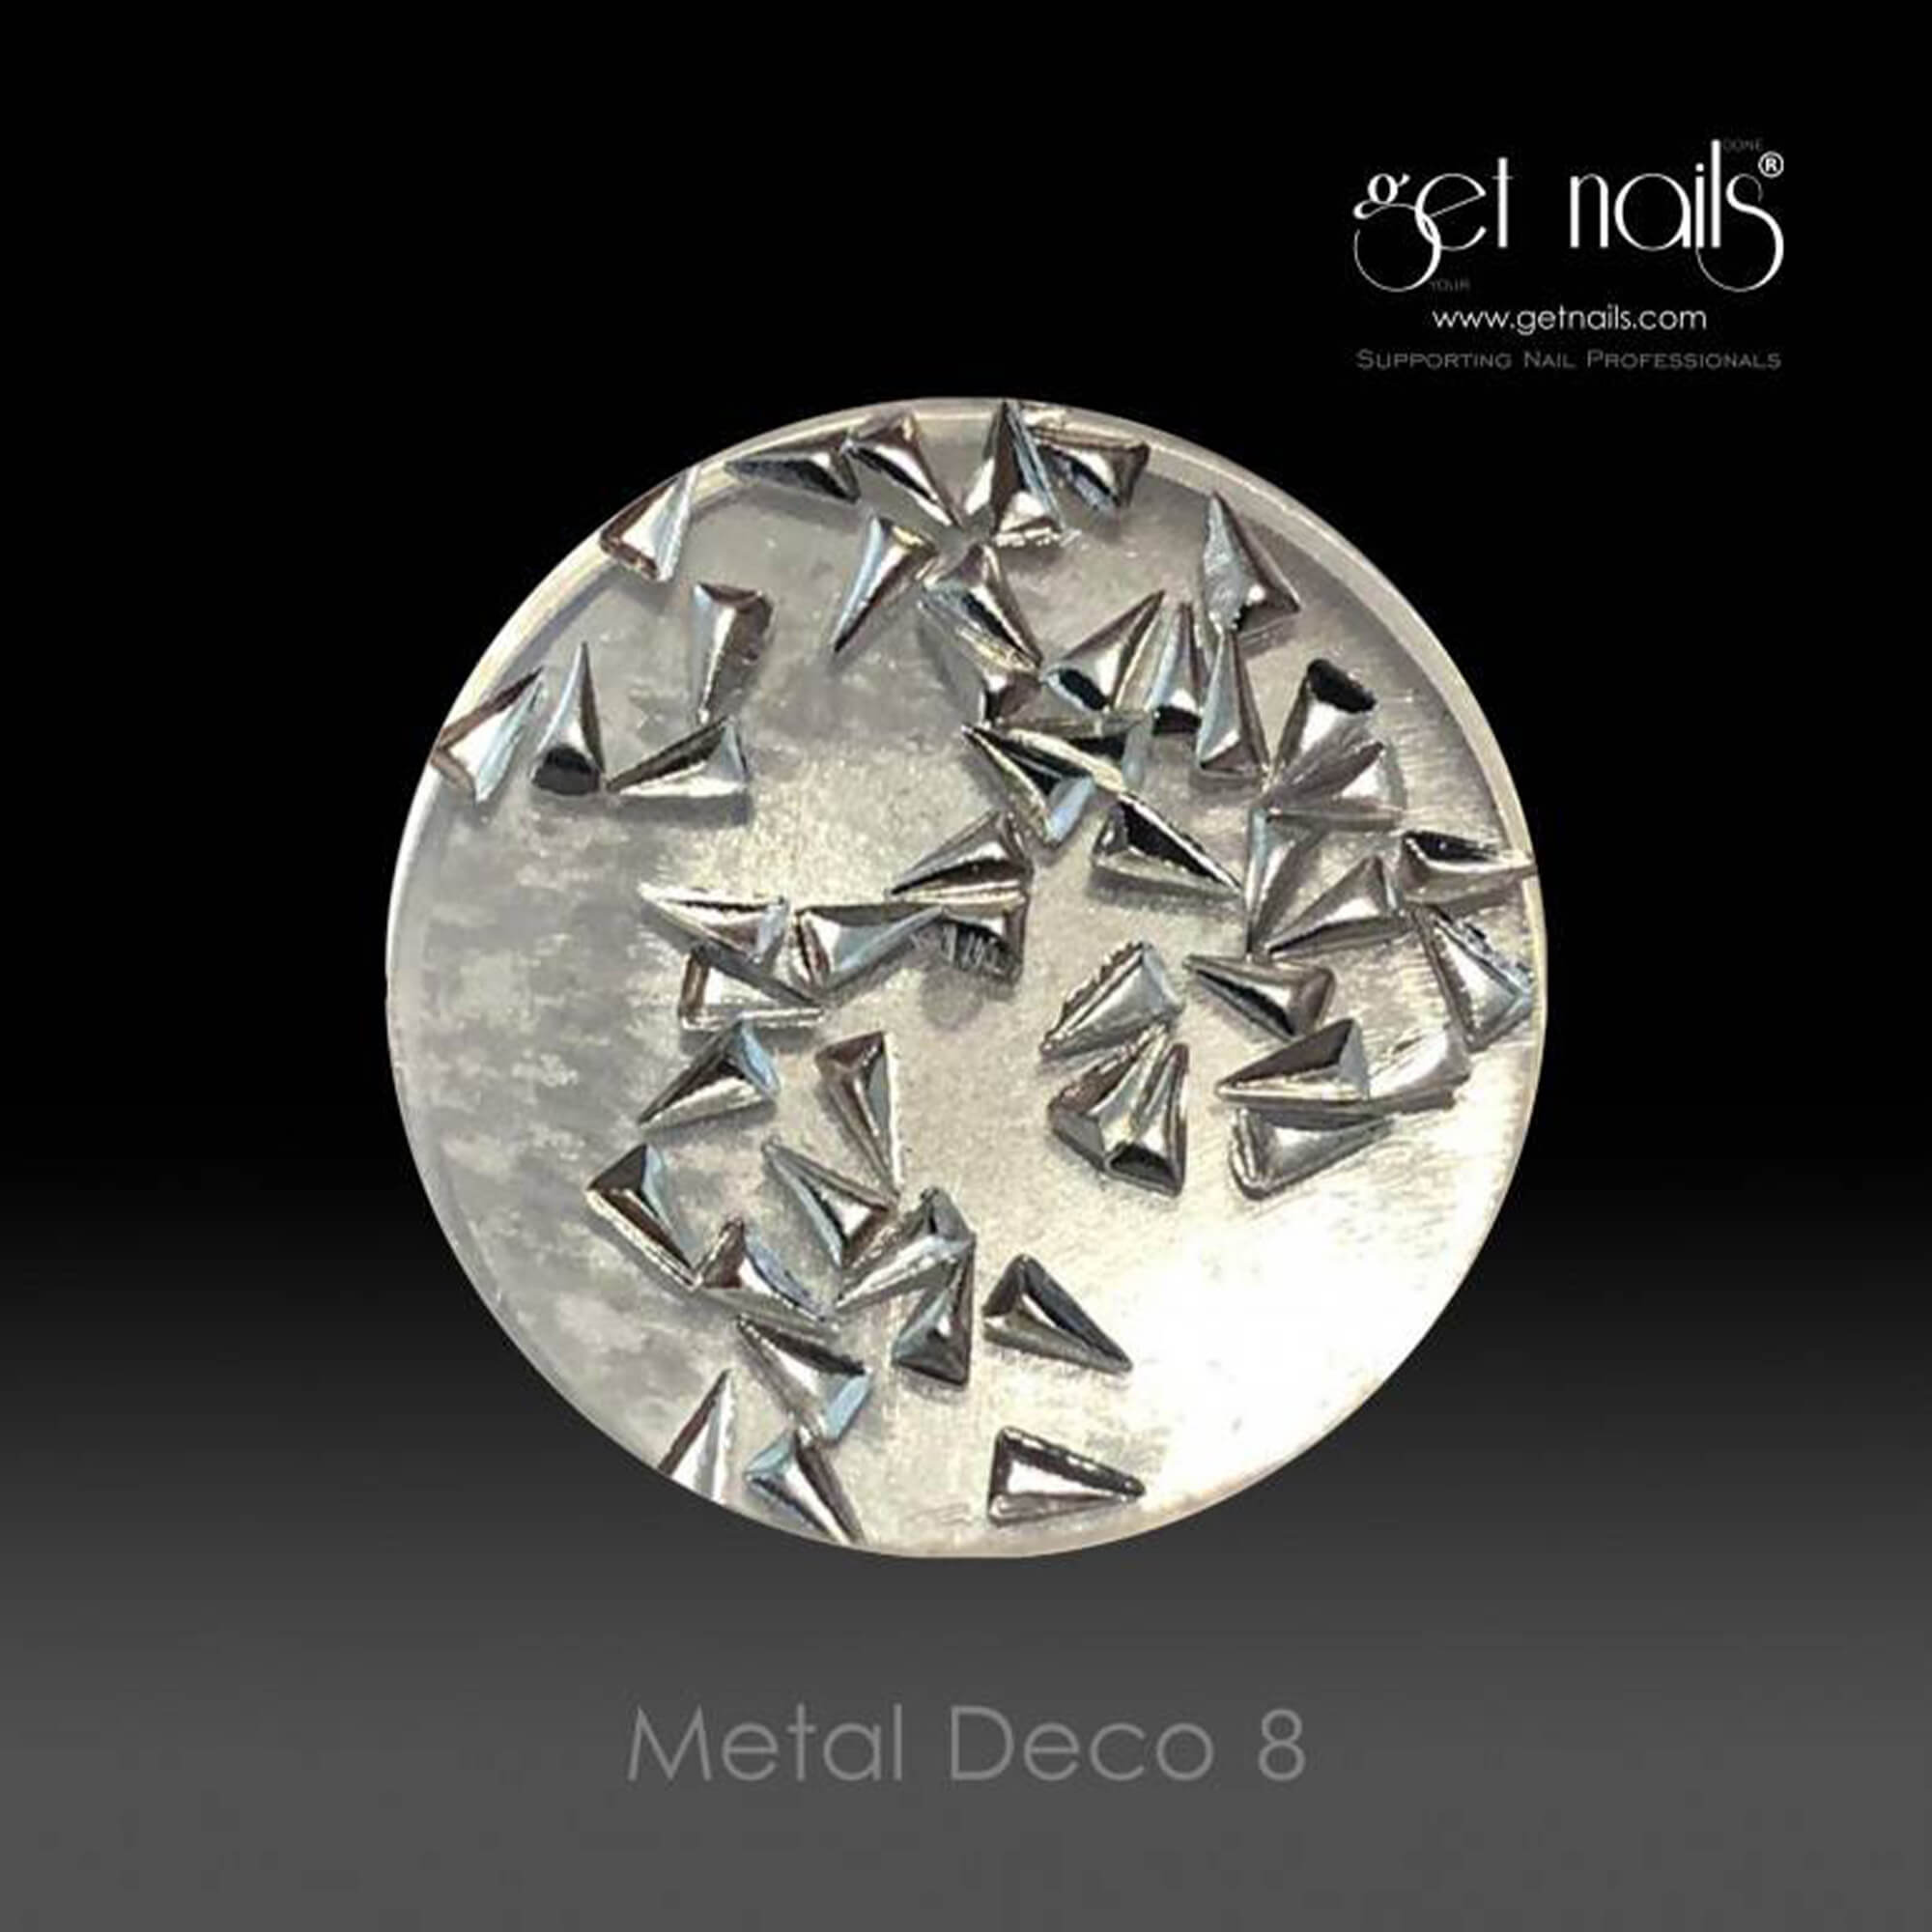 Get Nails Austria - Metal Deco 8 Silver, 50 db